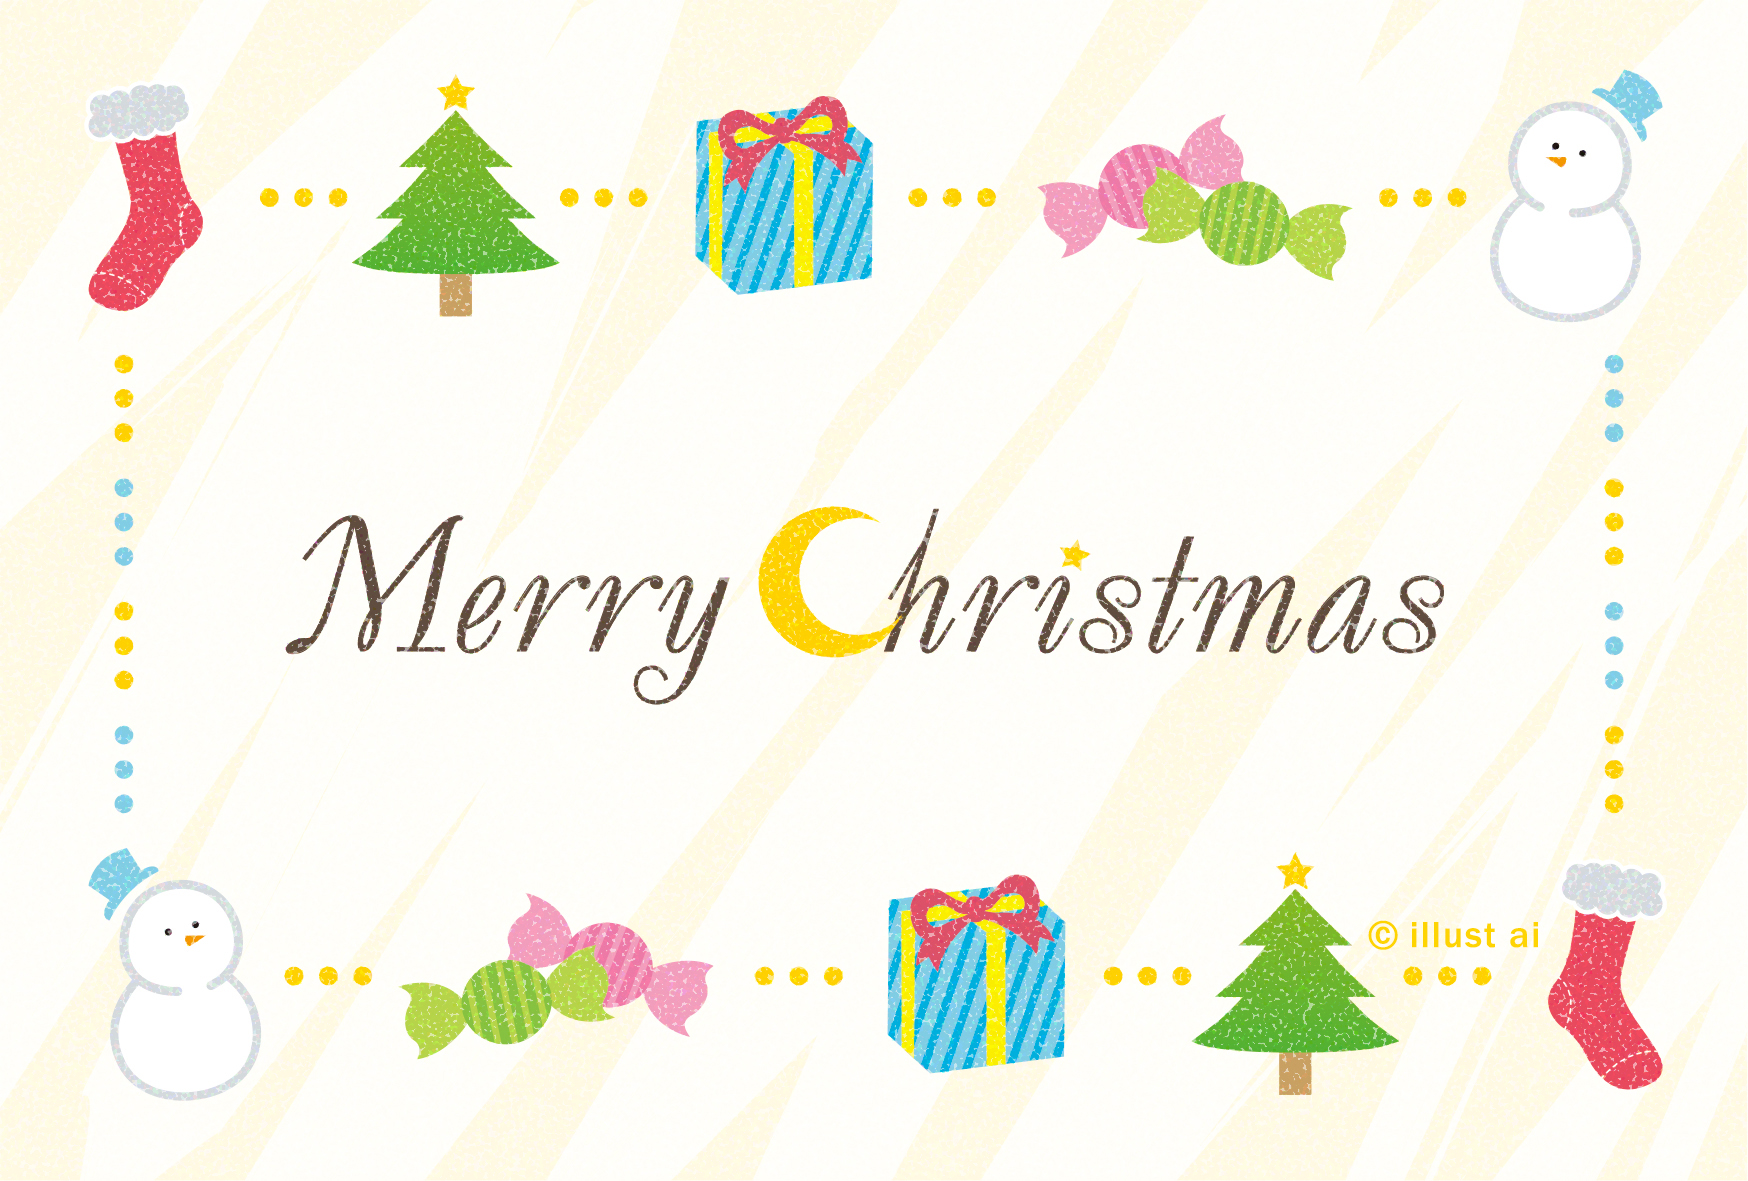 クリスマスのフレーム クリスマスカードテンプレート ポストカード イラスト素材サイト イラストareira Postcard Template